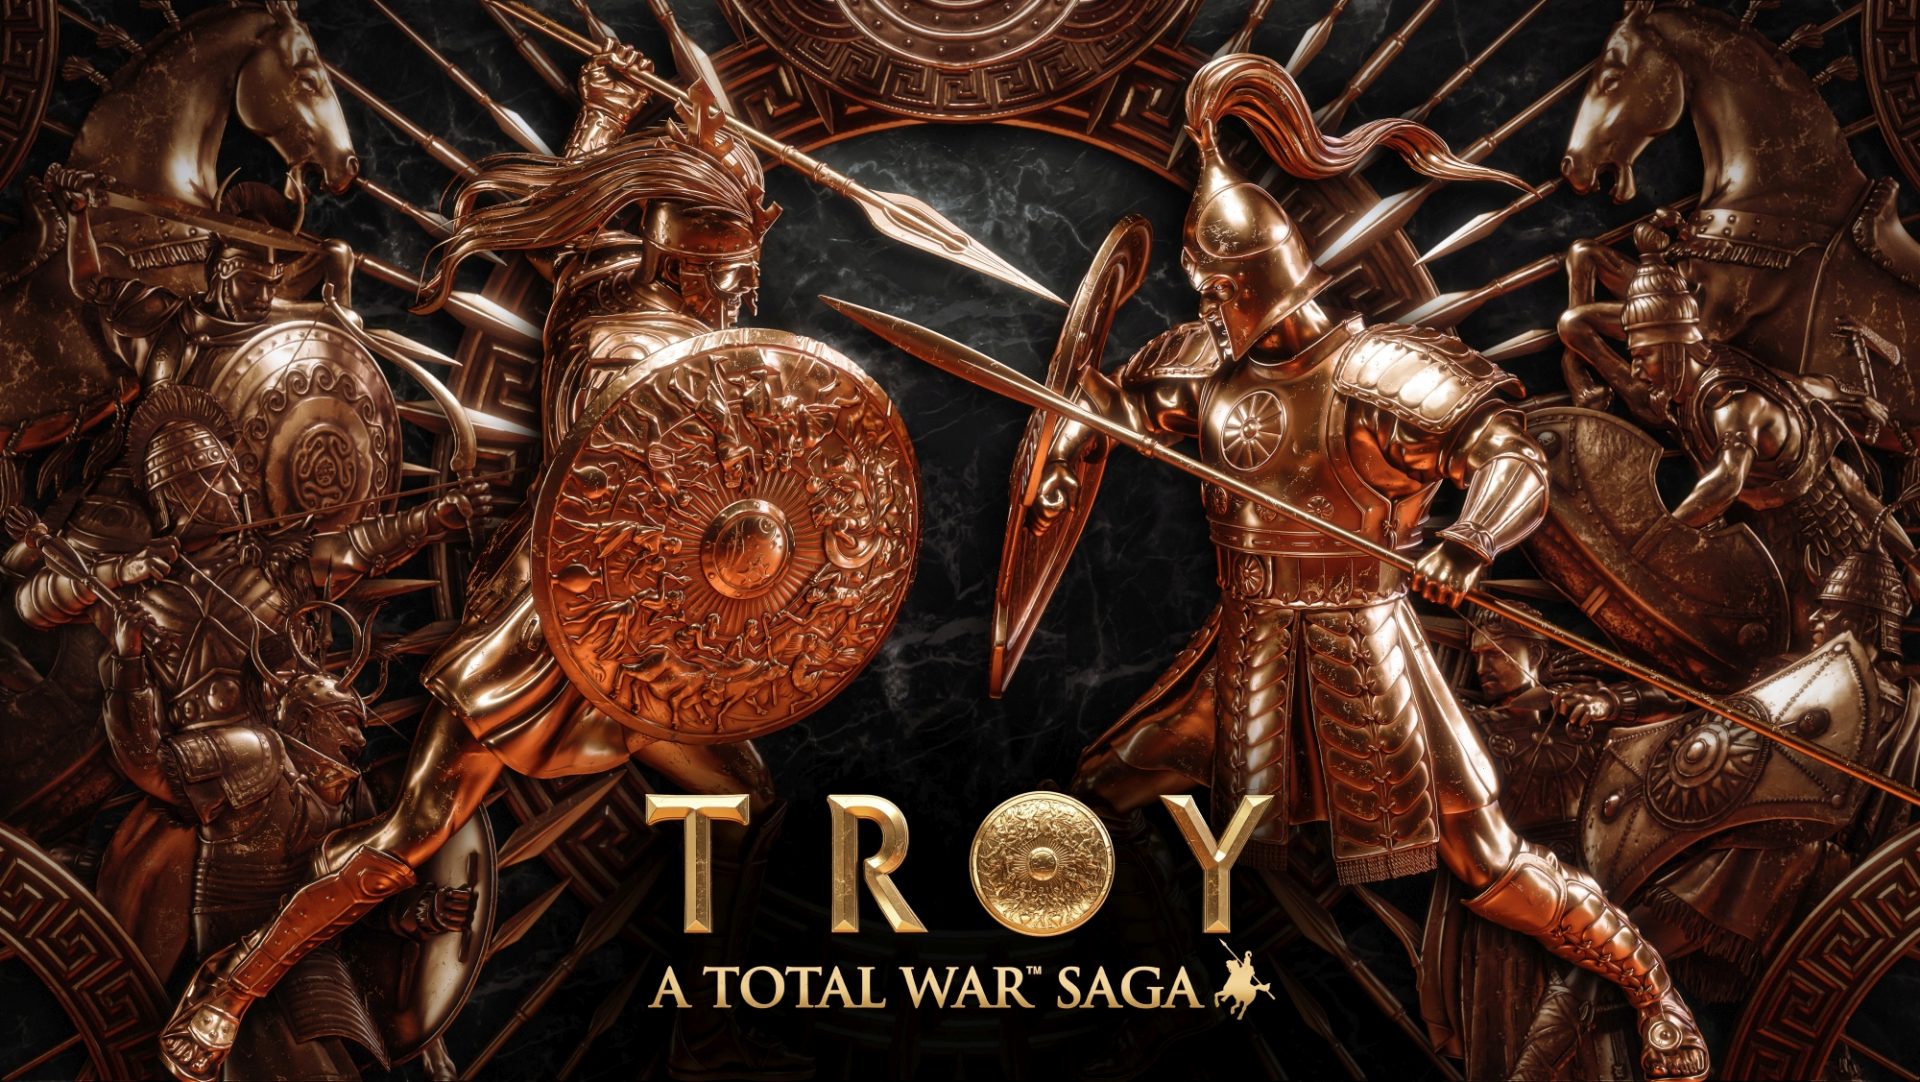 Sega ประกาศเปิดตัว Total War Saga: TROY สุดยอดสงครามระหว่าง Greek กับ Trojan